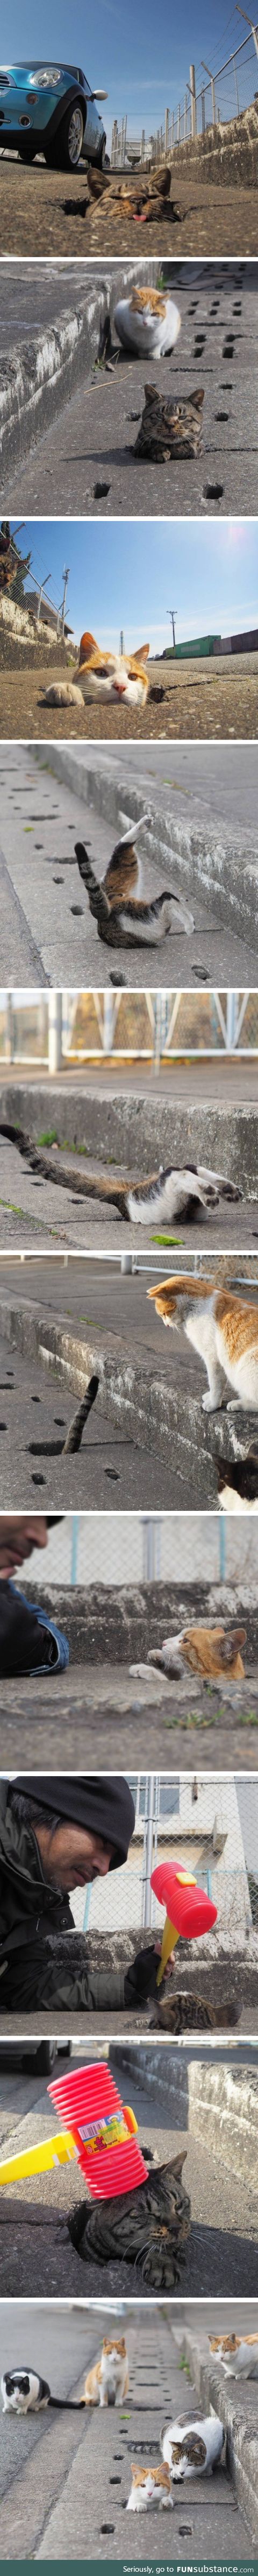 Stray cat in Japan